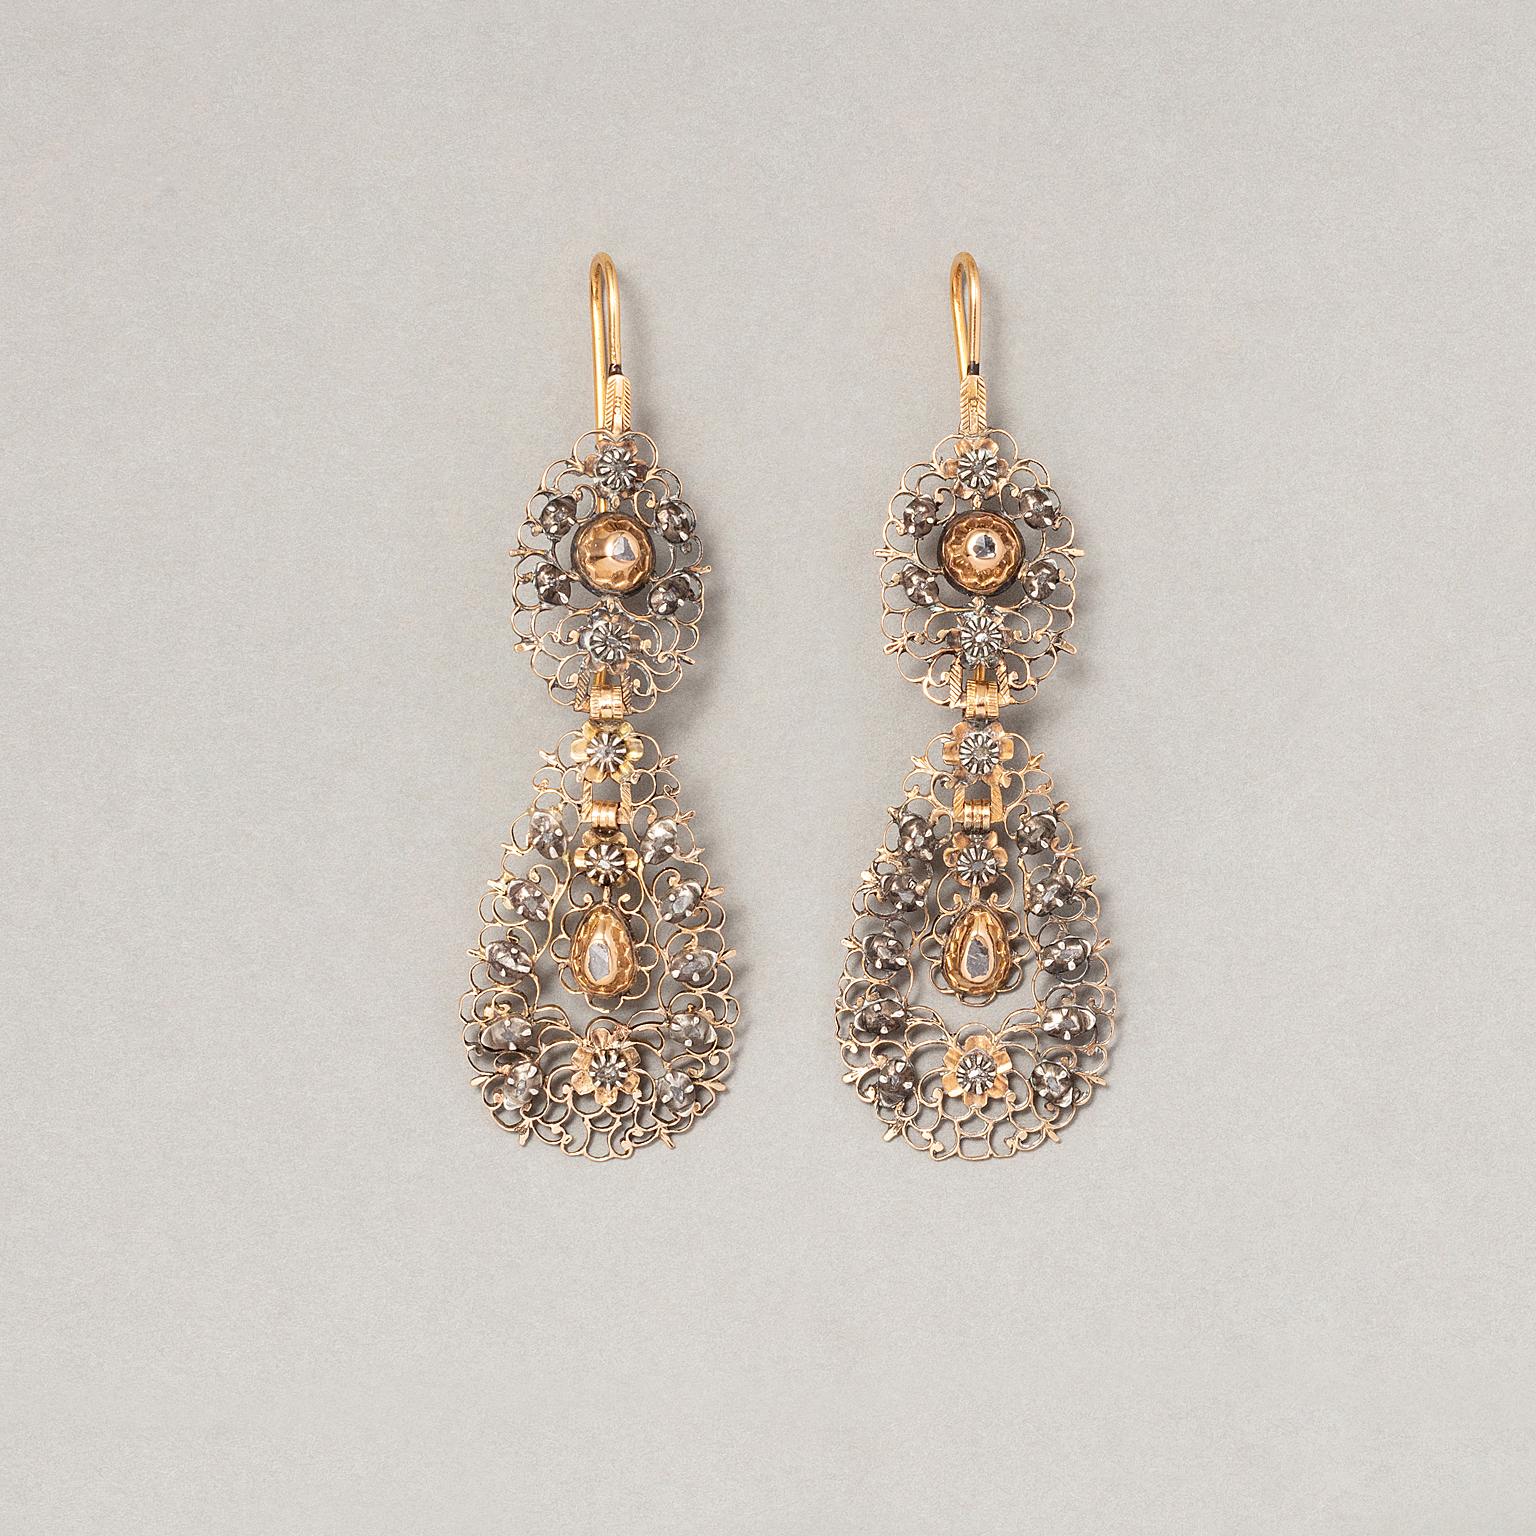 Ein Paar georgische flämische Ohrringe aus 15 Karat Gold und Silber, mit einem spitzenähnlichen Design, die Ohrringe sind aus Goldblech gefertigt und vollständig durchbrochen, mit Rollen und Blumen verziert, die mit Diamanten im Rosenschliff in Gold